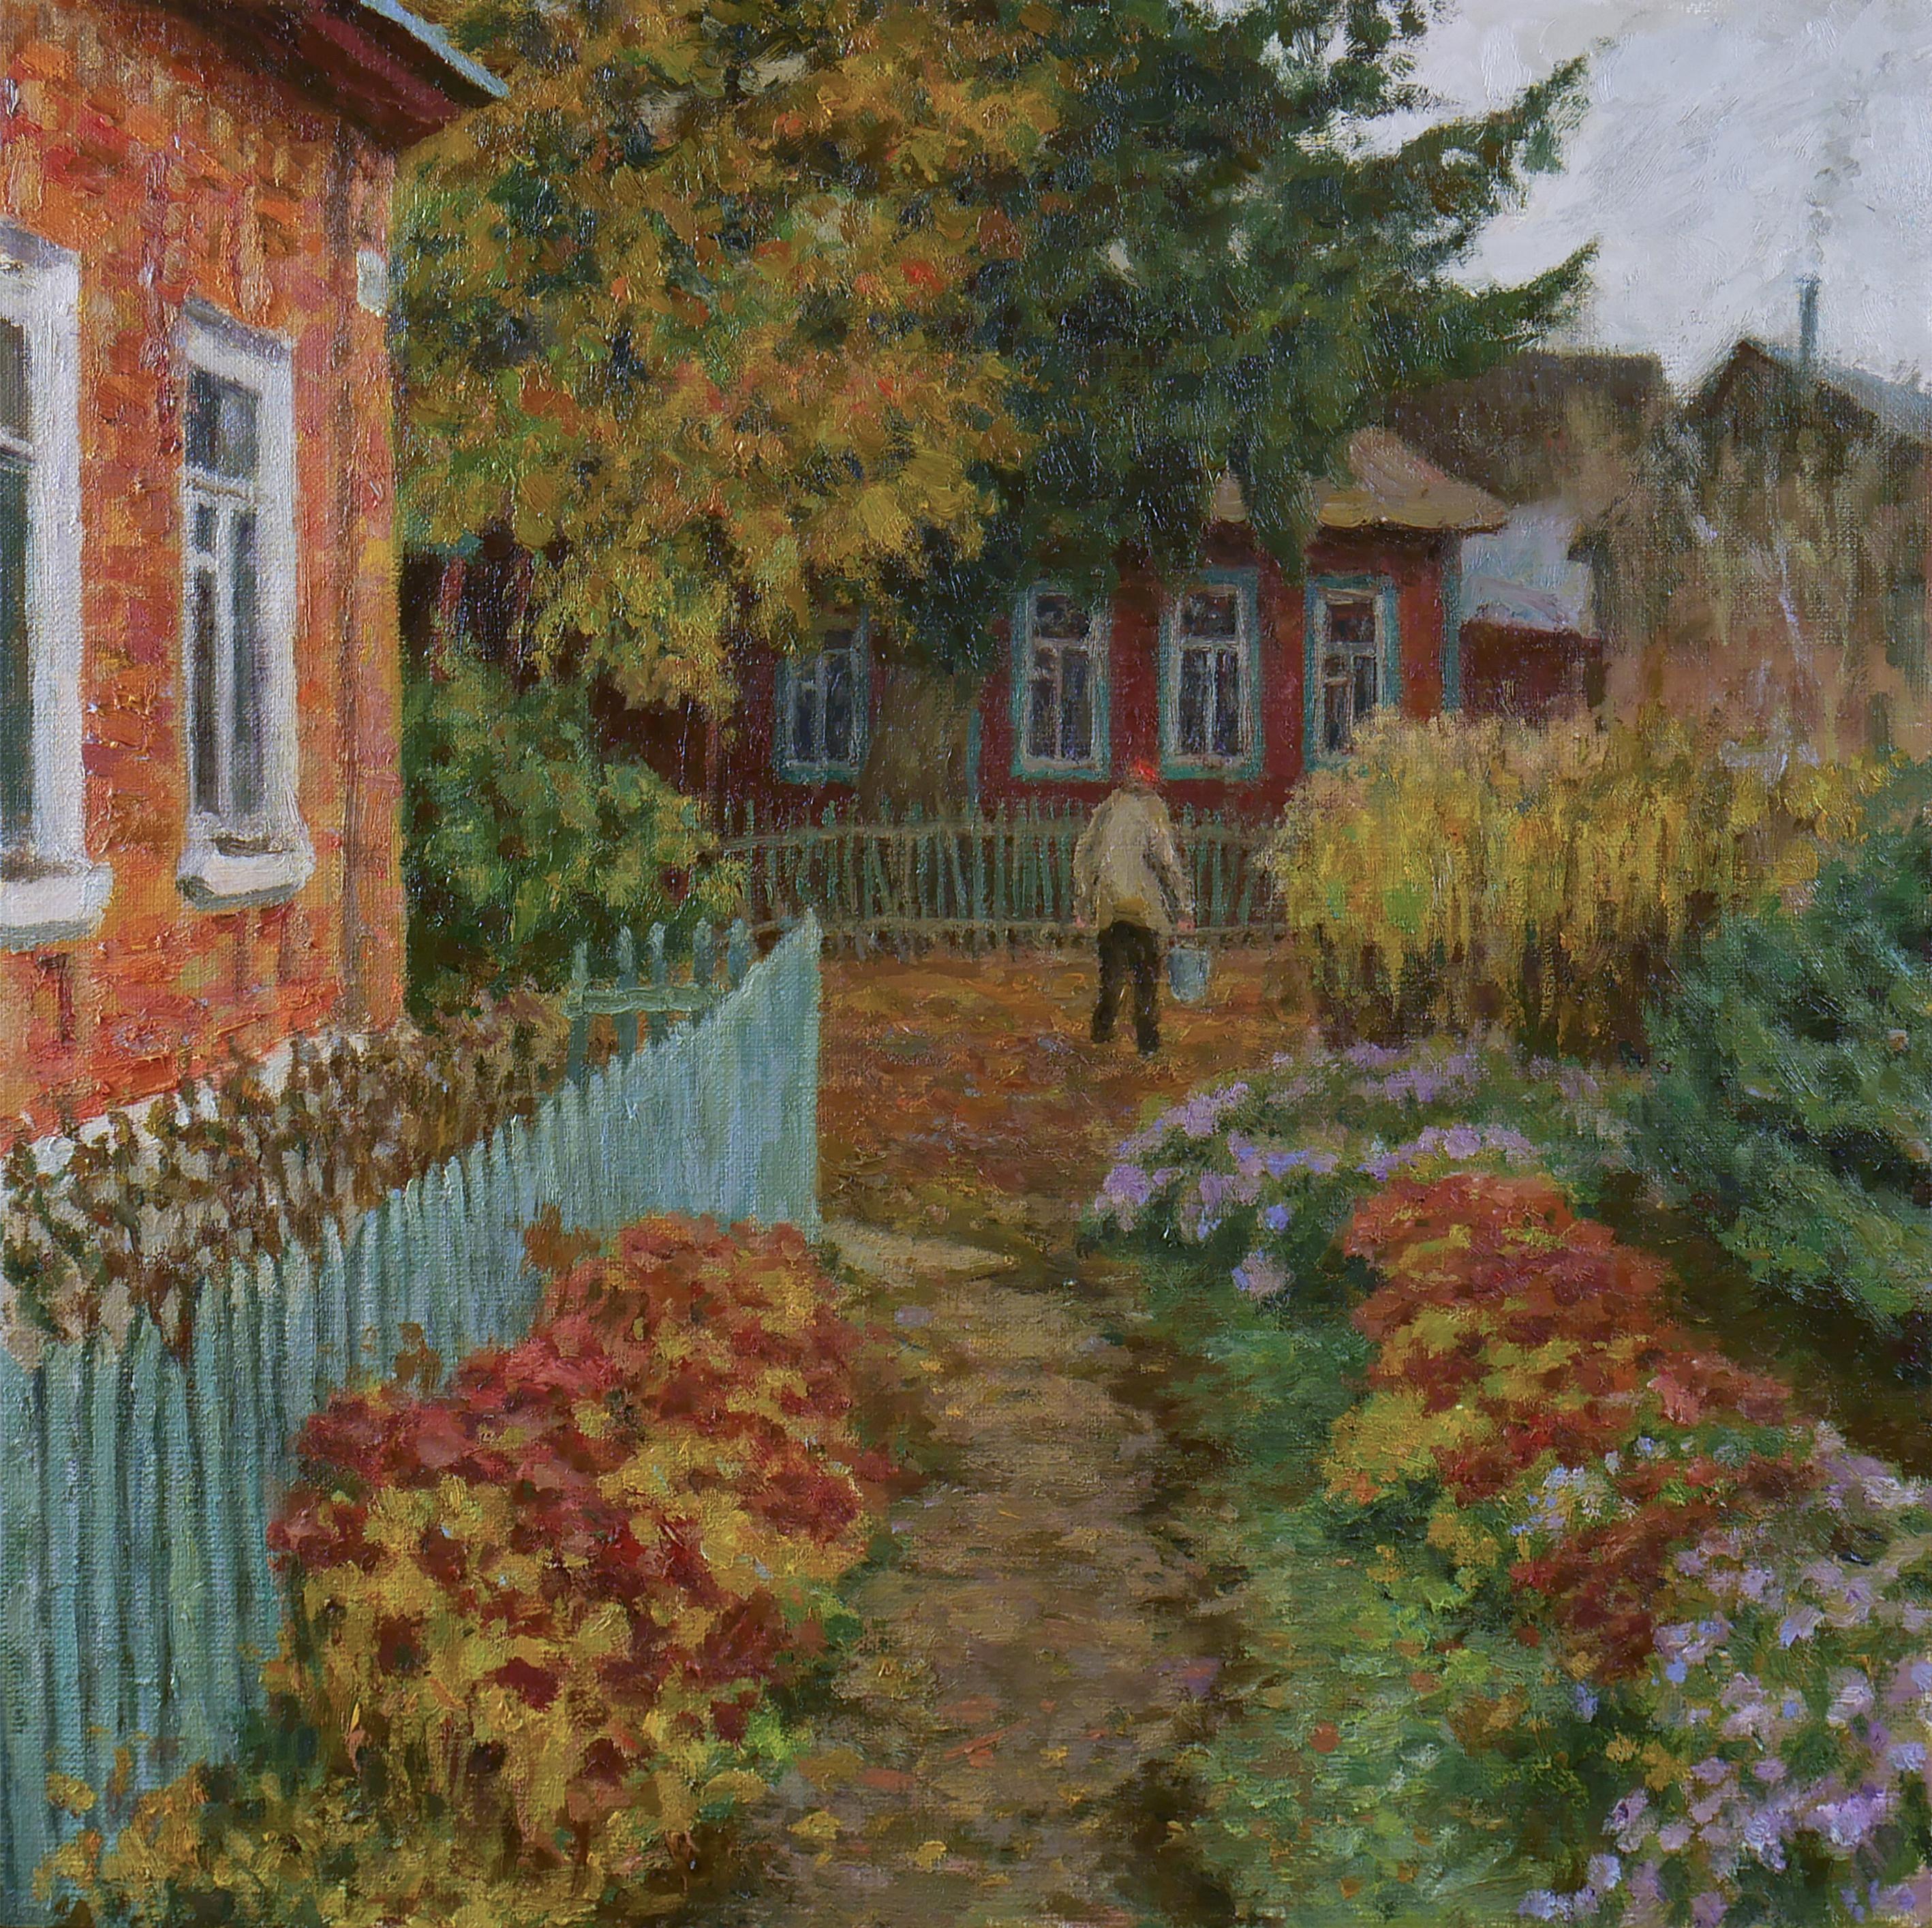 The Autumn Yard - peinture de paysage d'automne